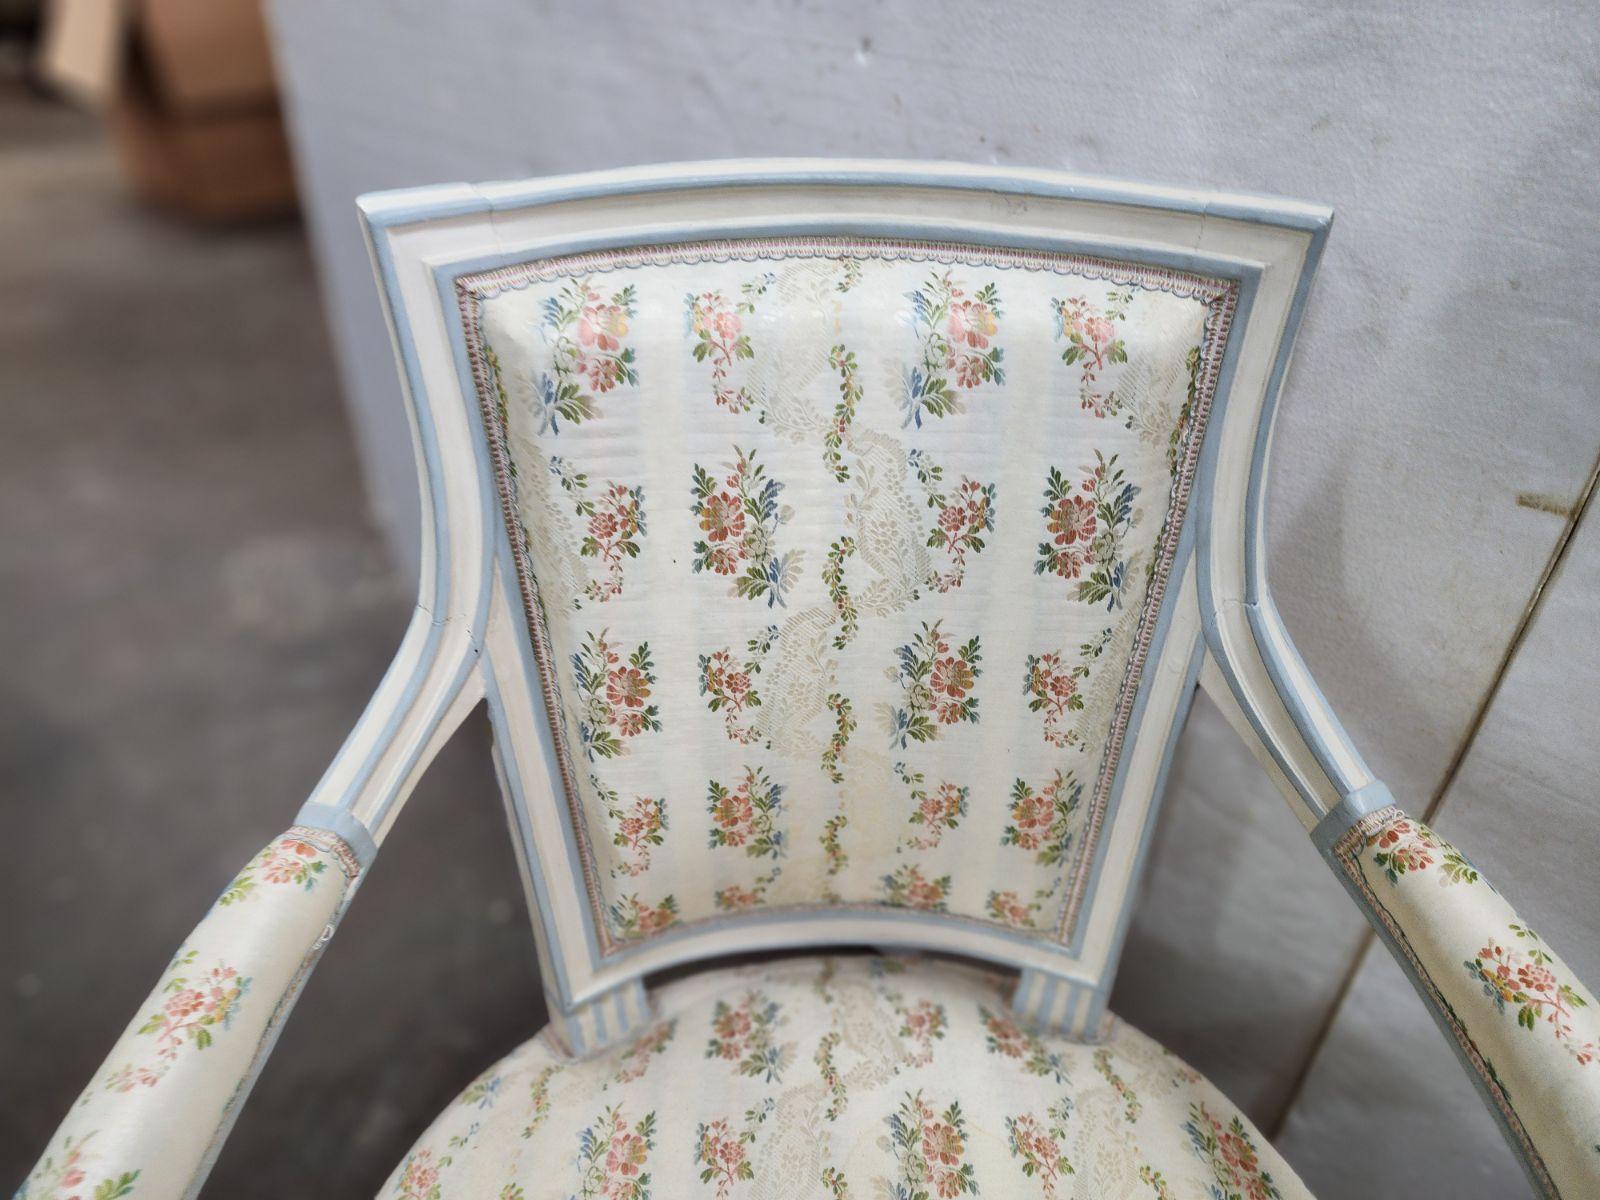 Diese offenen Sessel im französischen Directoire-Stil aus der Zeit um 1910 sind ein charmantes und elegantes Paar. Mit ihren sanft geschwungenen Armlehnen und den filigranen Schnitzereien strahlen diese Stühle einen zeitlosen Reiz aus. Sie sind in